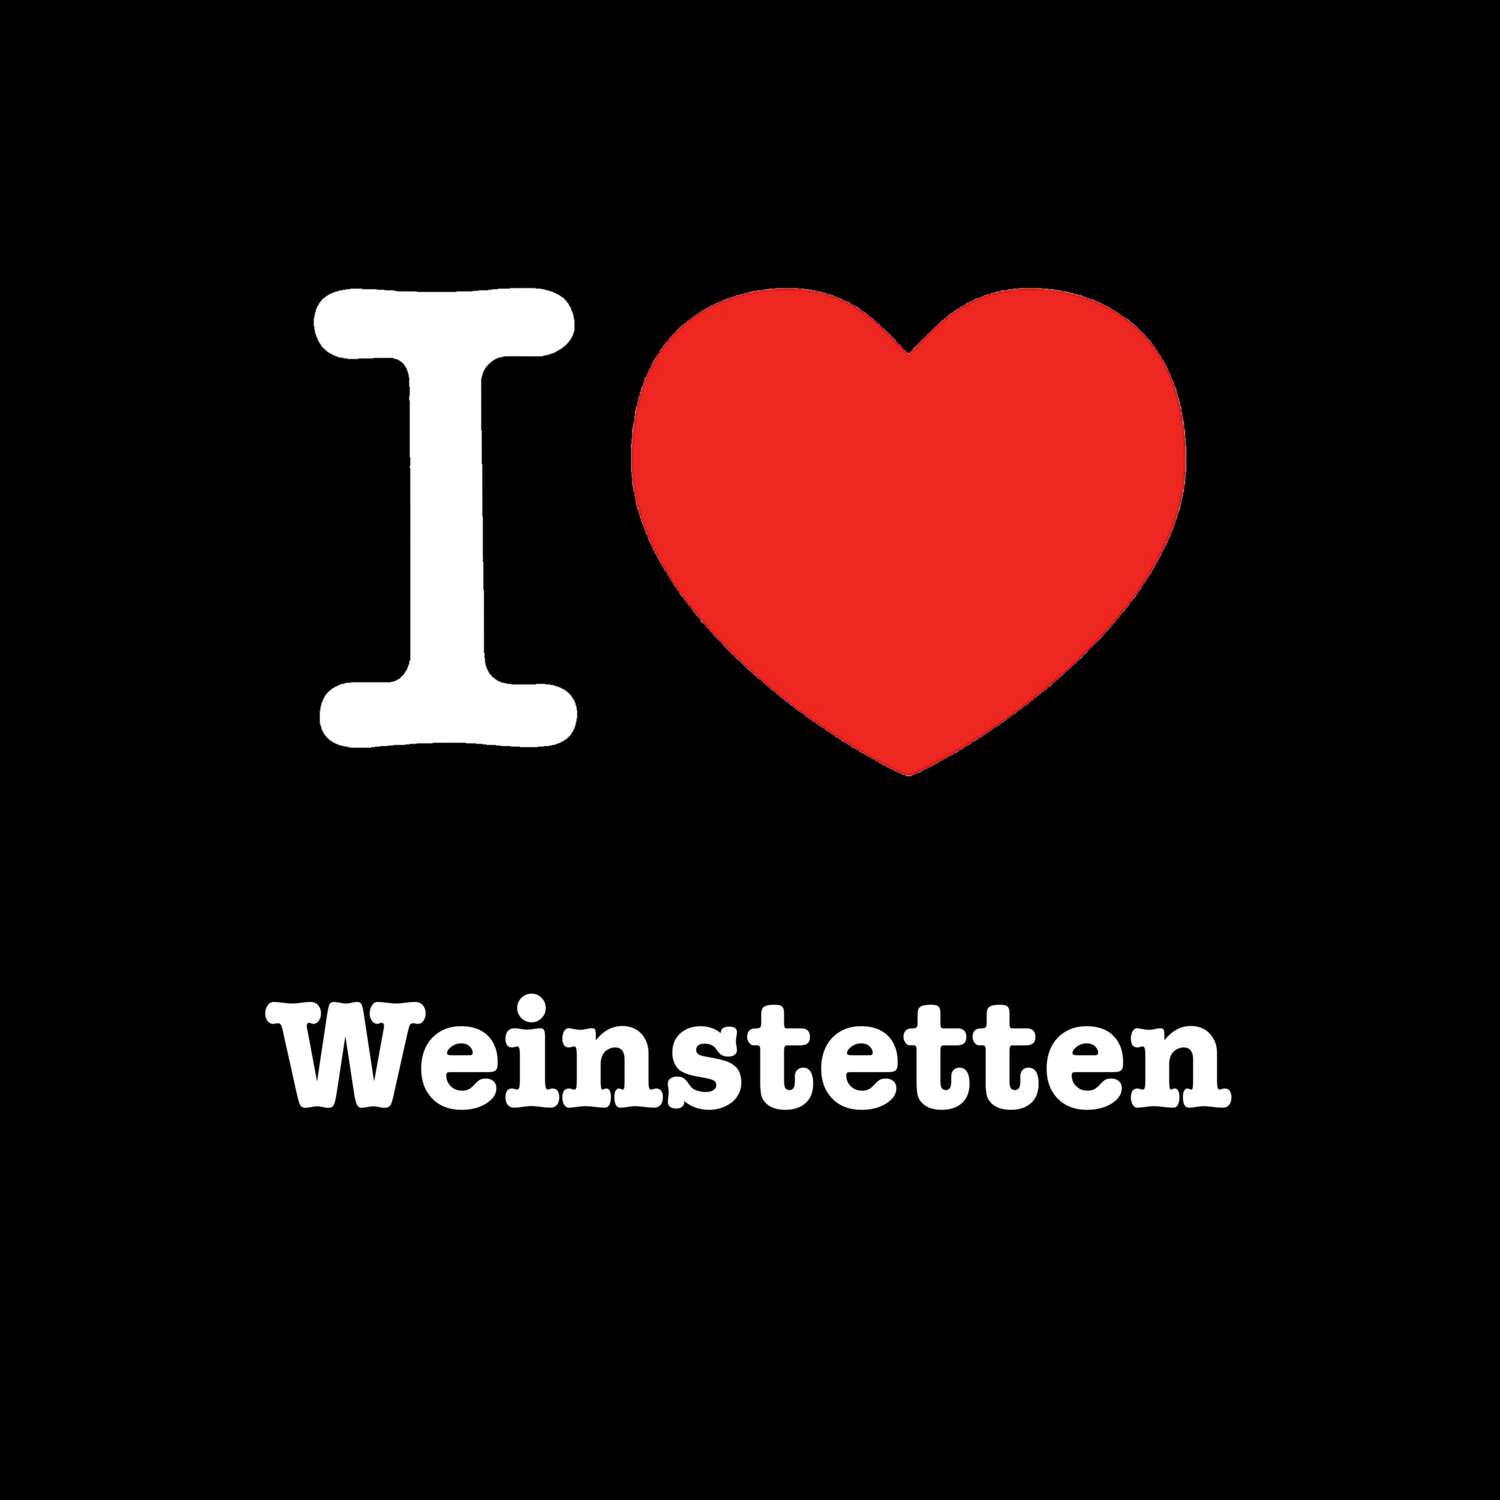 Weinstetten T-Shirt »I love«